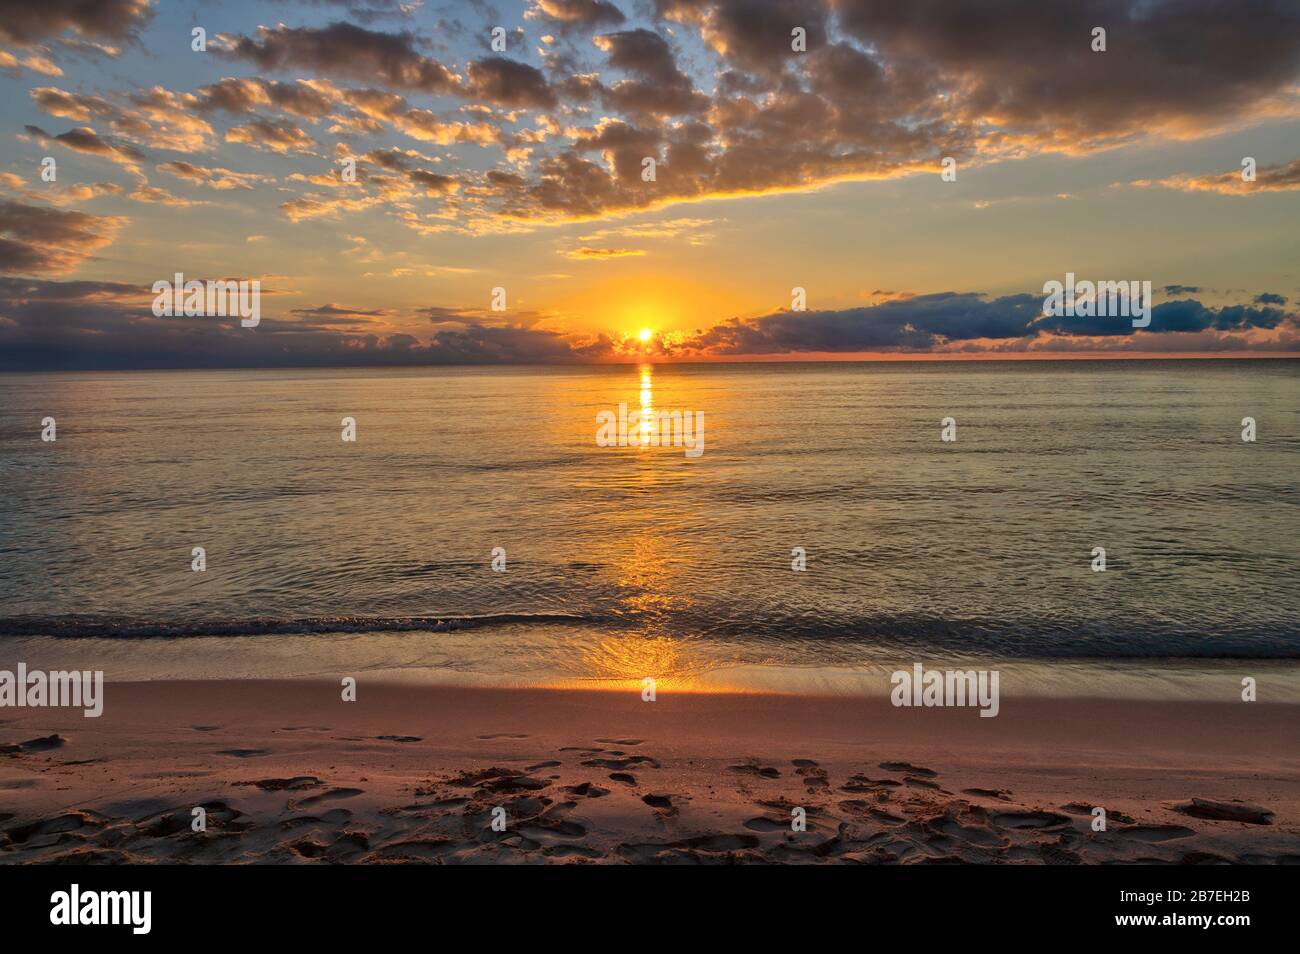 Magnifique lever de soleil près de la plage à Cancun, au Mexique, avec des reflets dorés sur la mer des Caraïbes. Banque D'Images